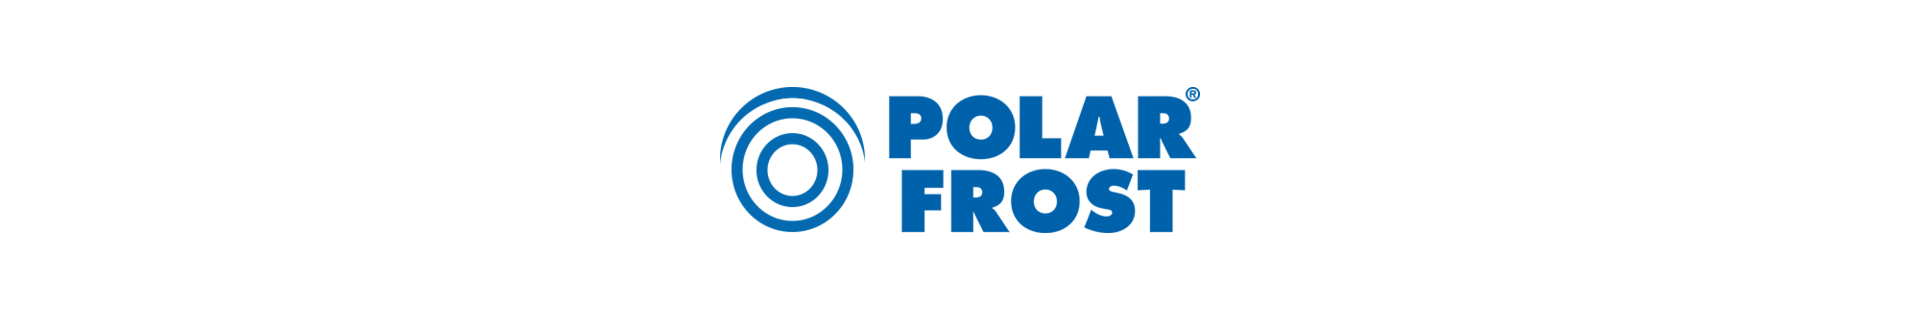 polar frost